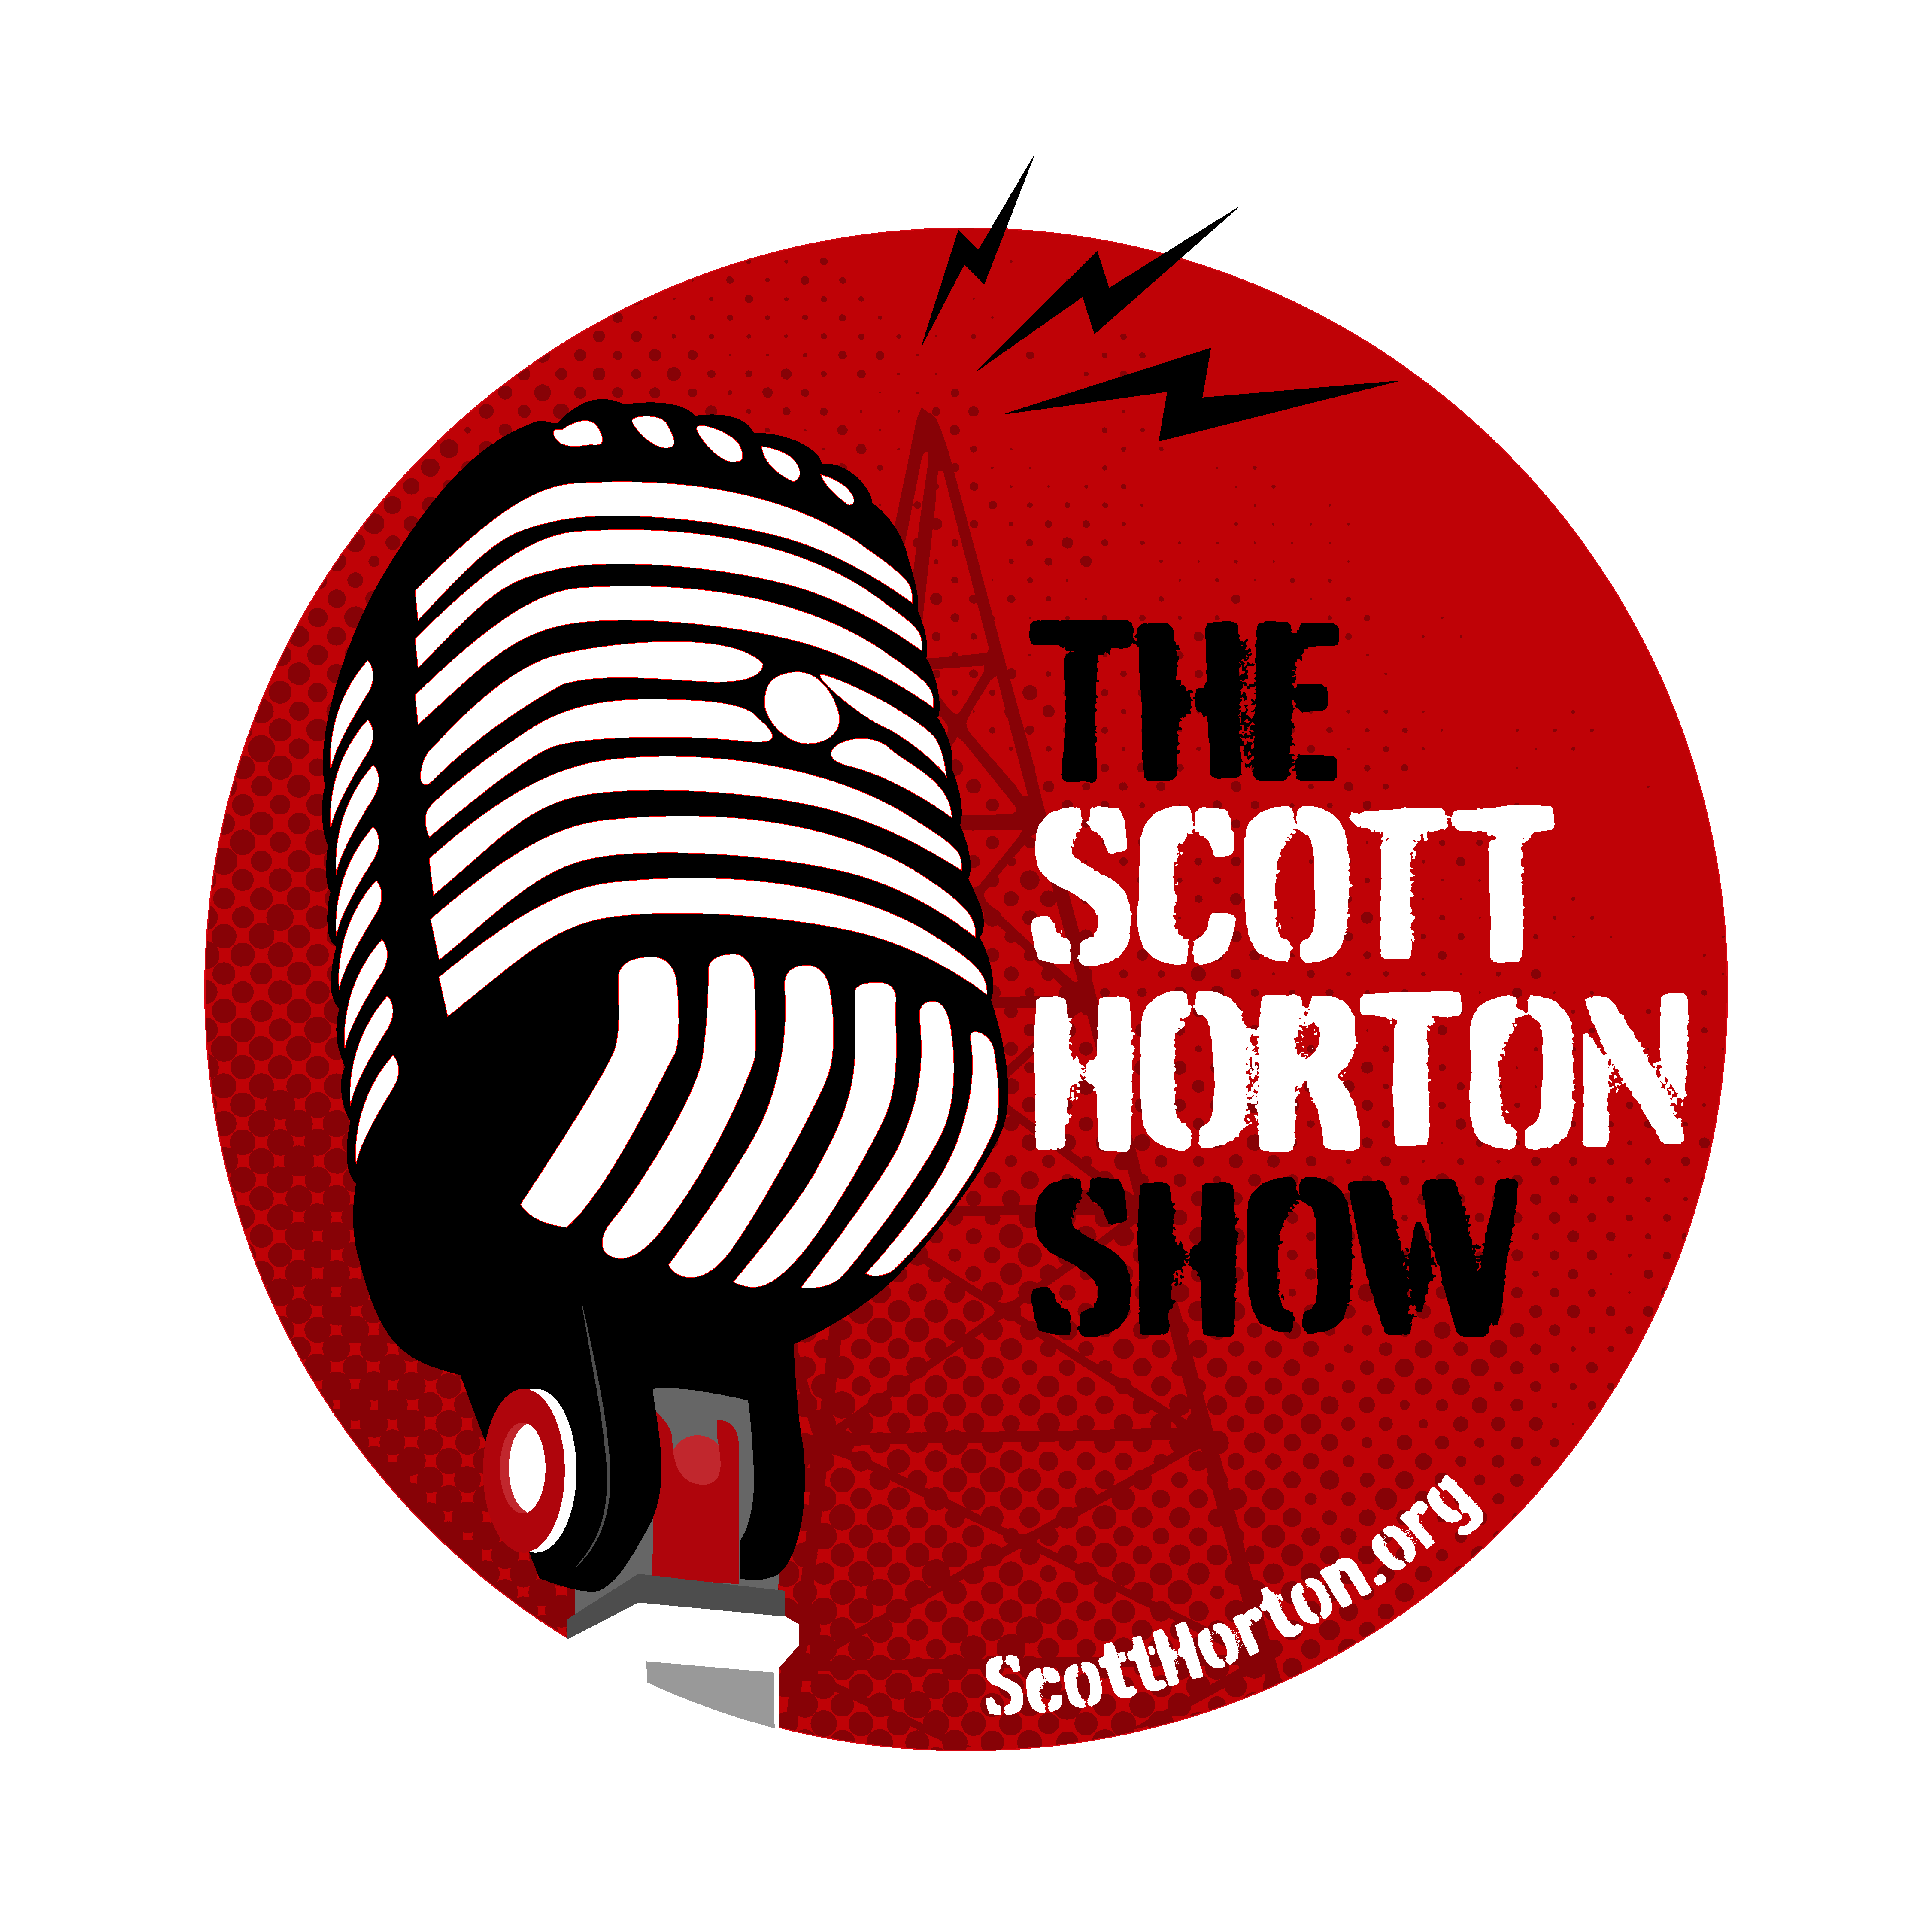 The Scott Horton Show